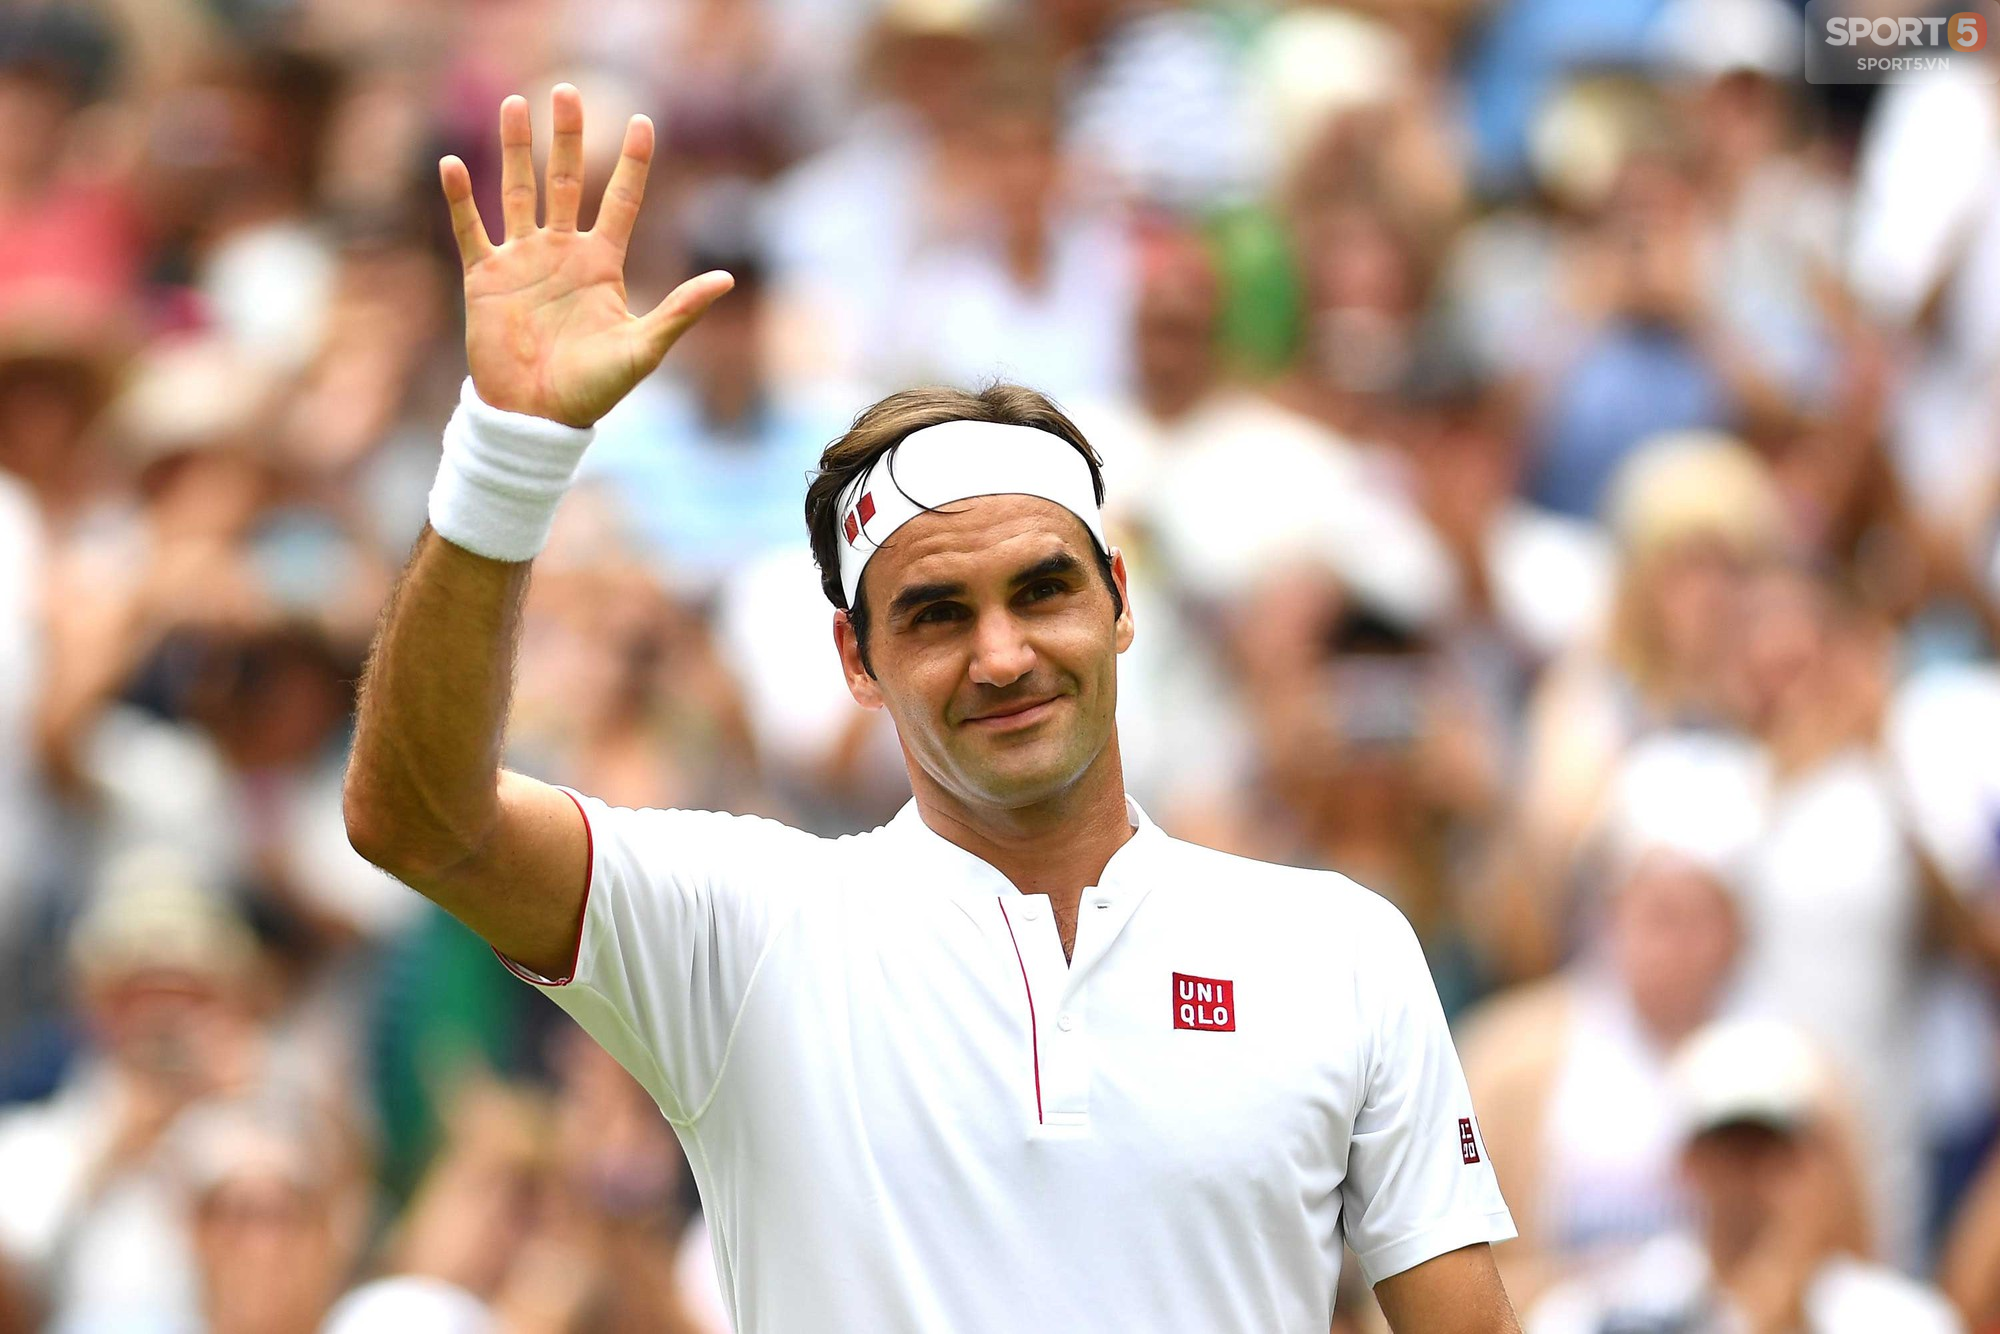 Nhận sự ủng hộ to lớn trên khán đài, Federer lần thứ 16 vào tứ kết Wimbledon - Ảnh 7.